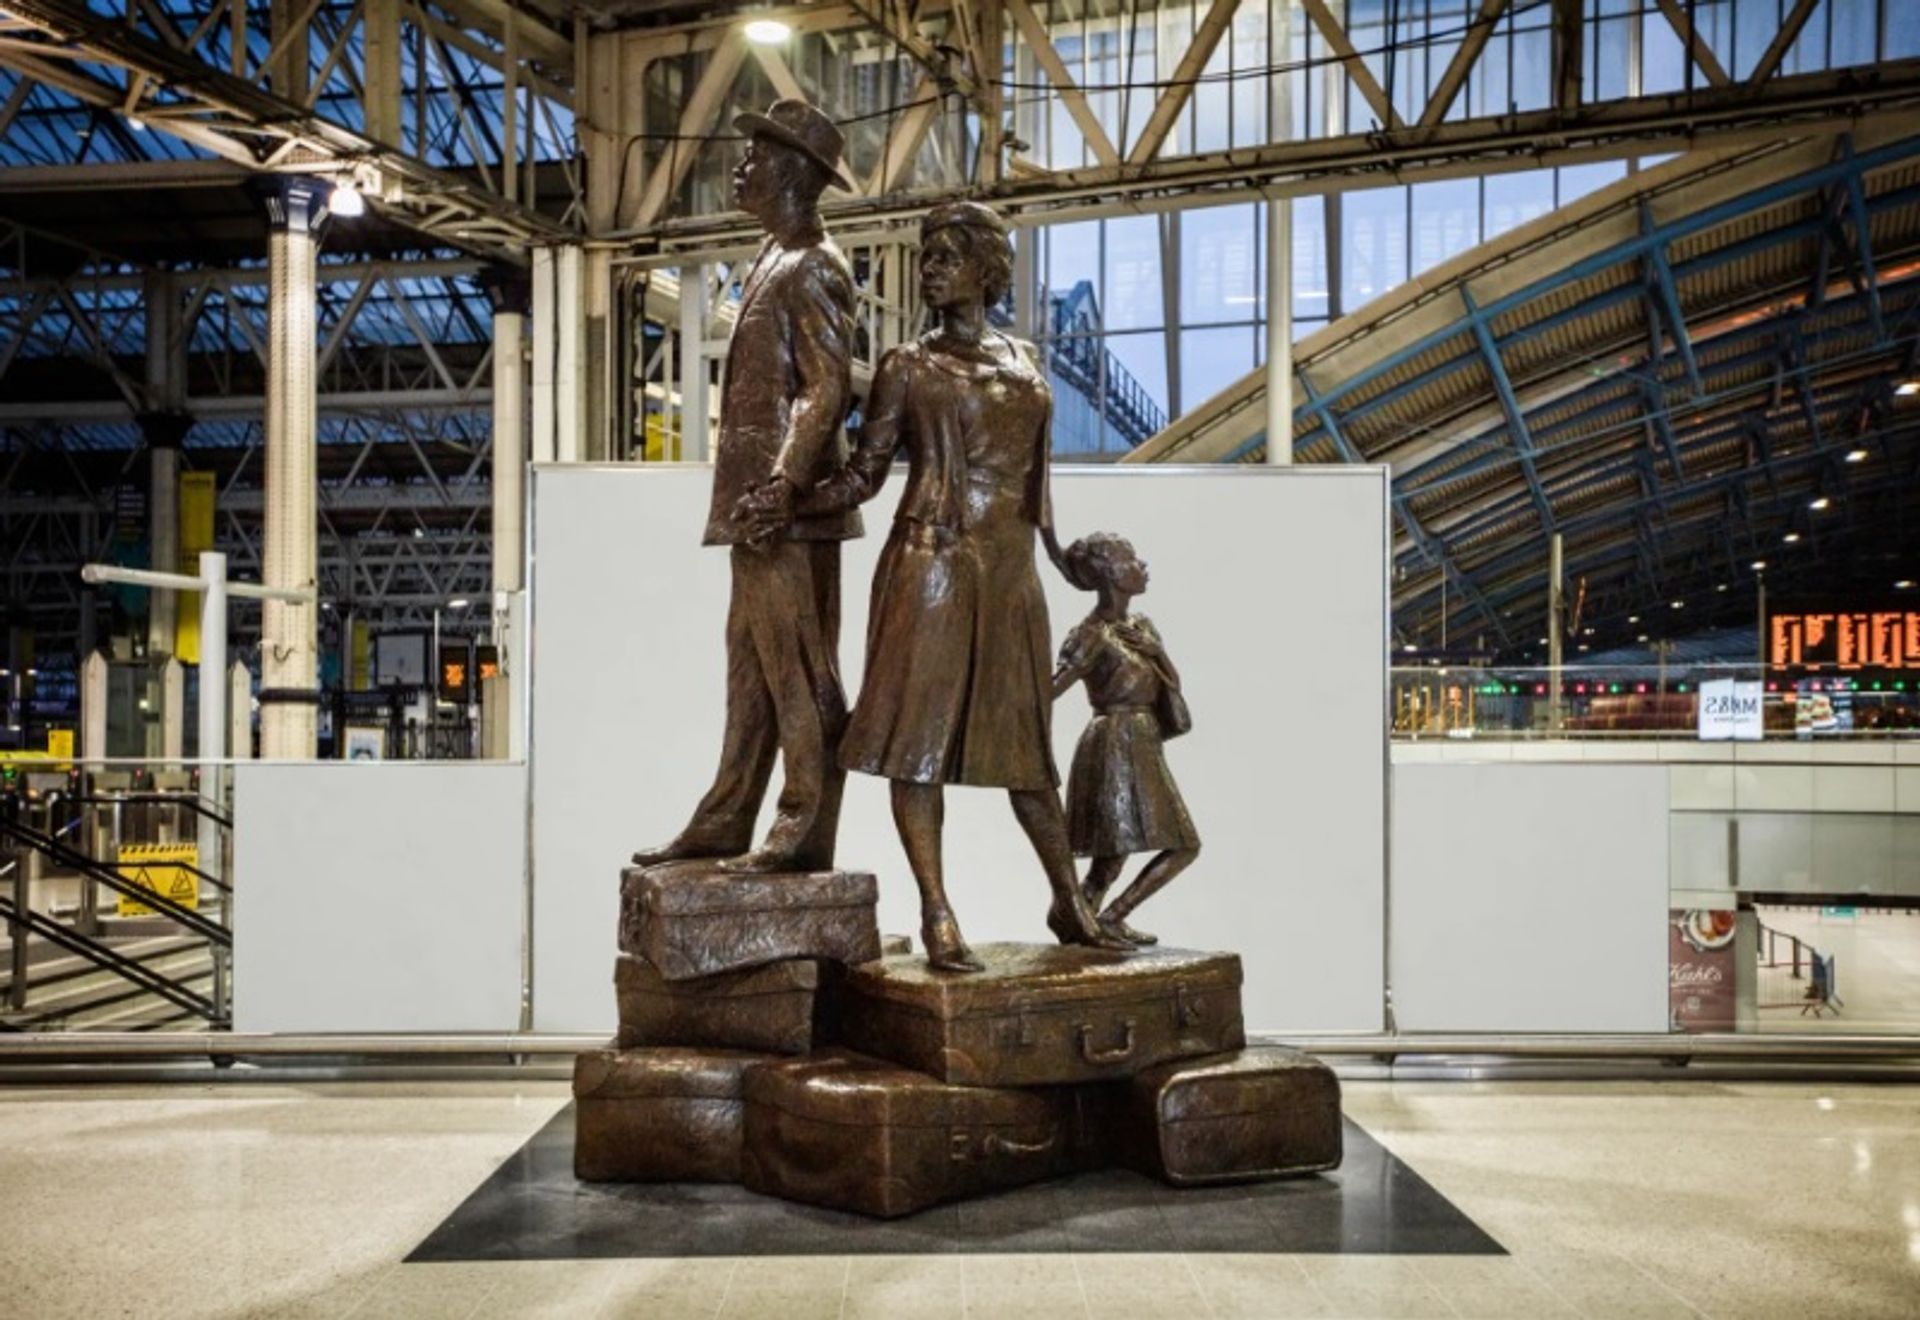 עבודתו של בזיל ווטסון בתחנת ווטרלו בלונדון מציגה גבר, אישה וילד מטפסים על הר של מזוודות, יד ביד

קרדיט: בזיל ווטסון